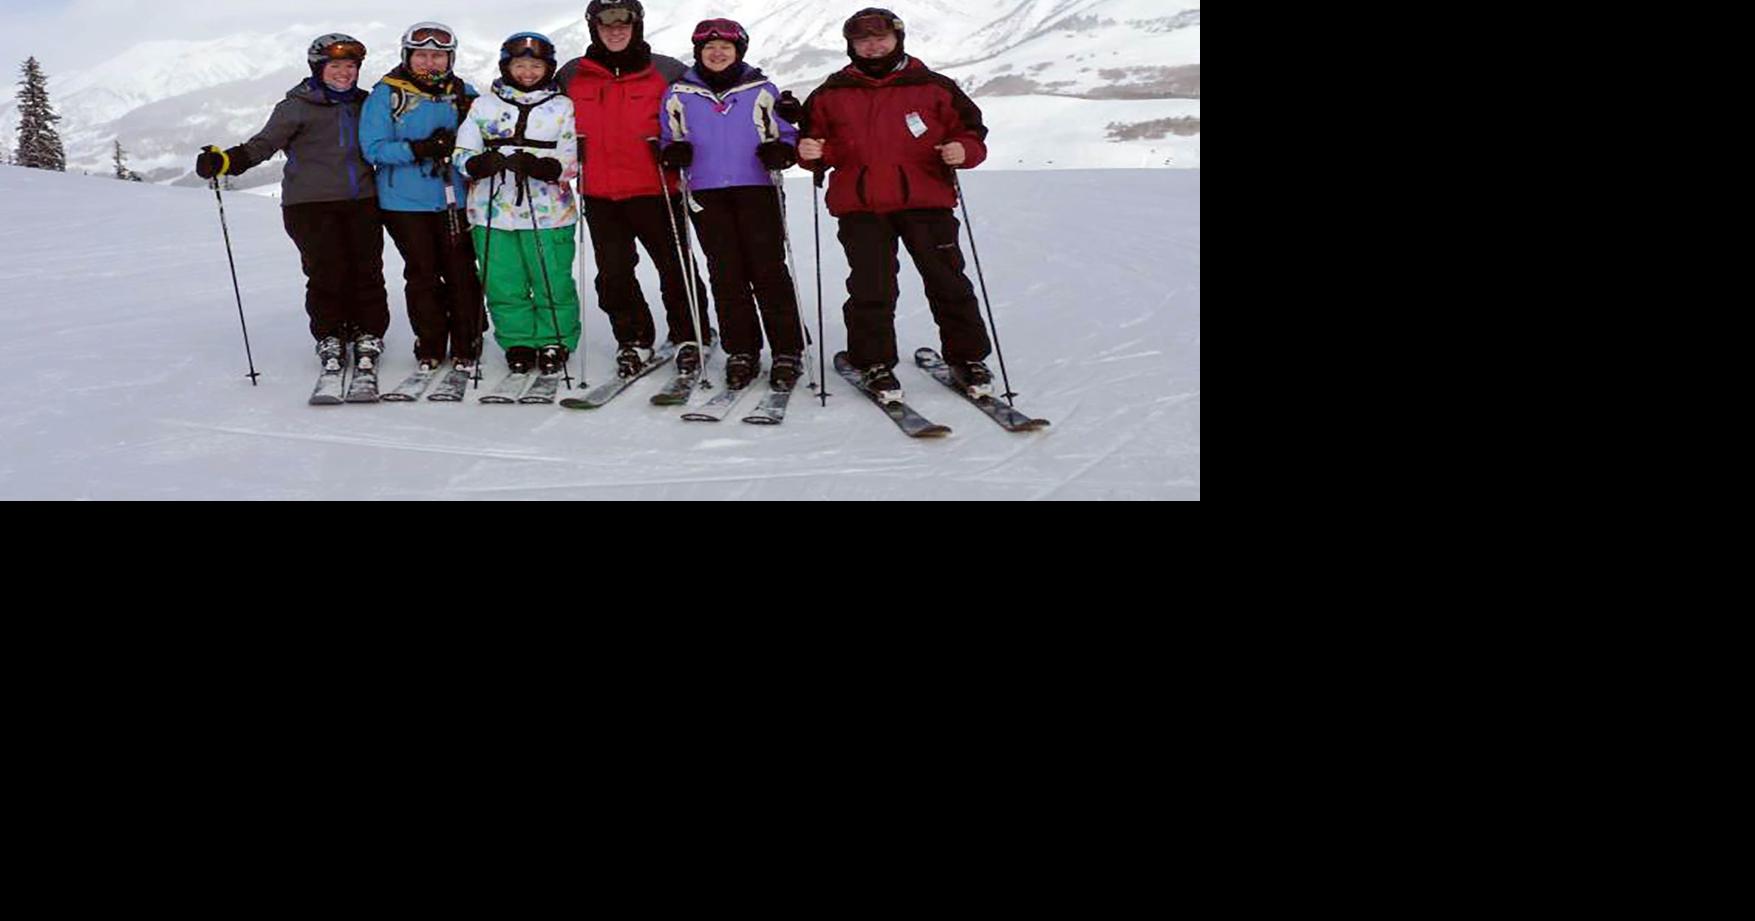 Pitt Ski and Snowboard Club